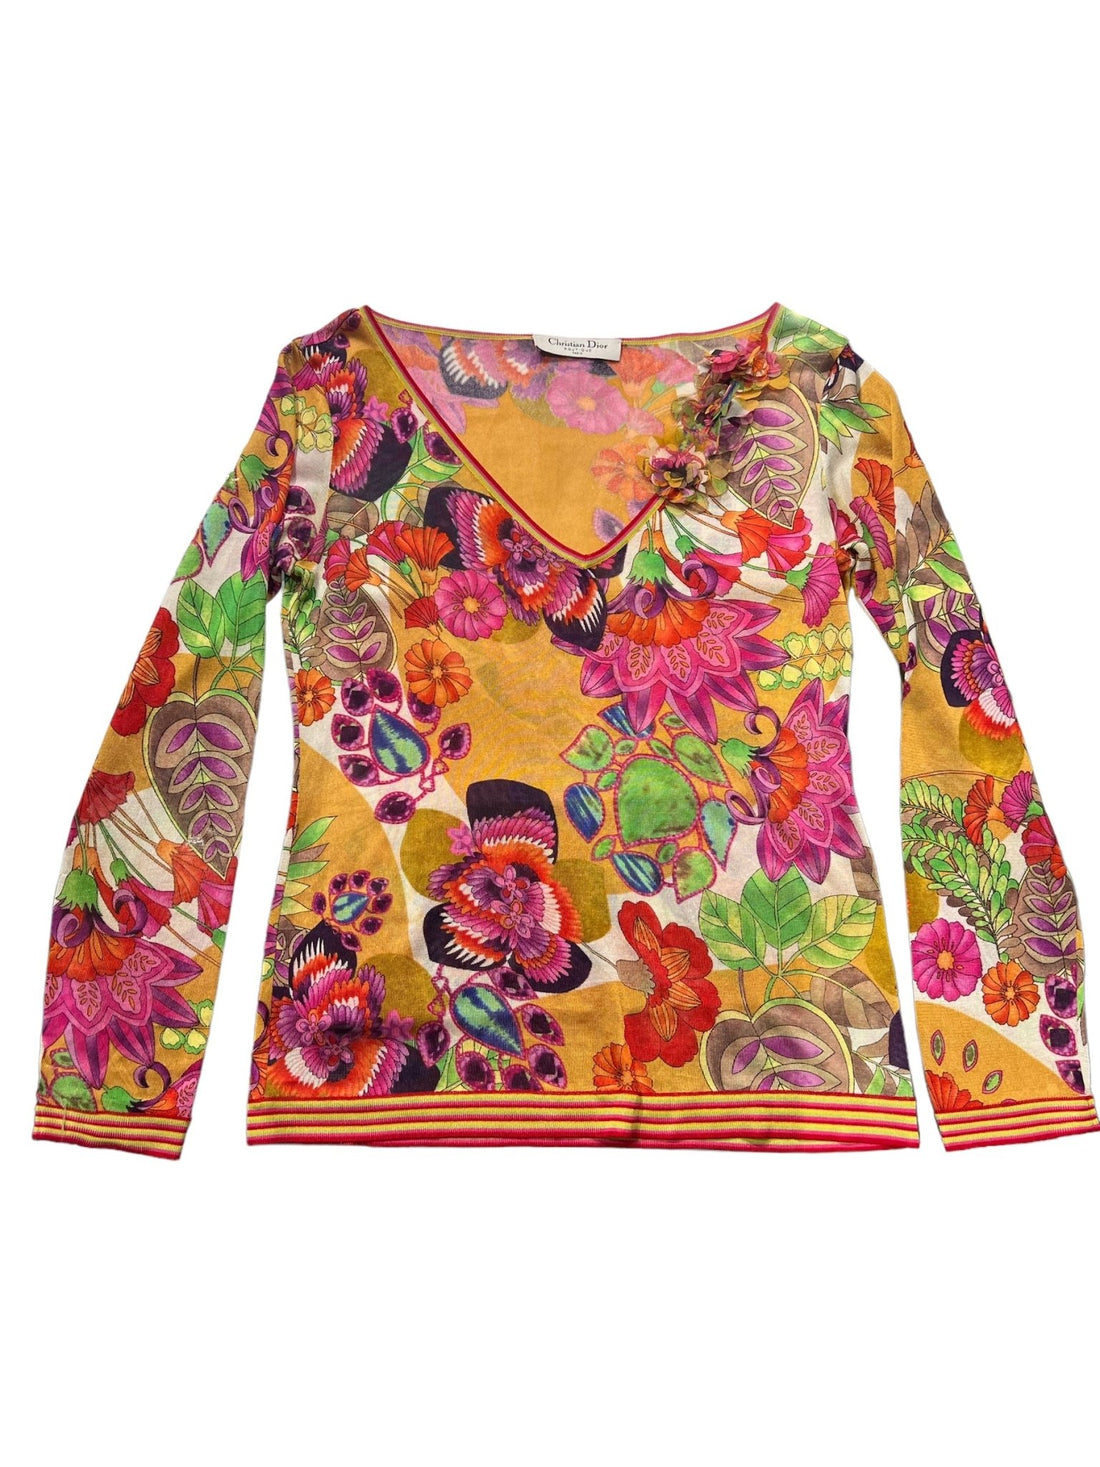 Dior T - shirt multicolore floral S - Les Folies d&